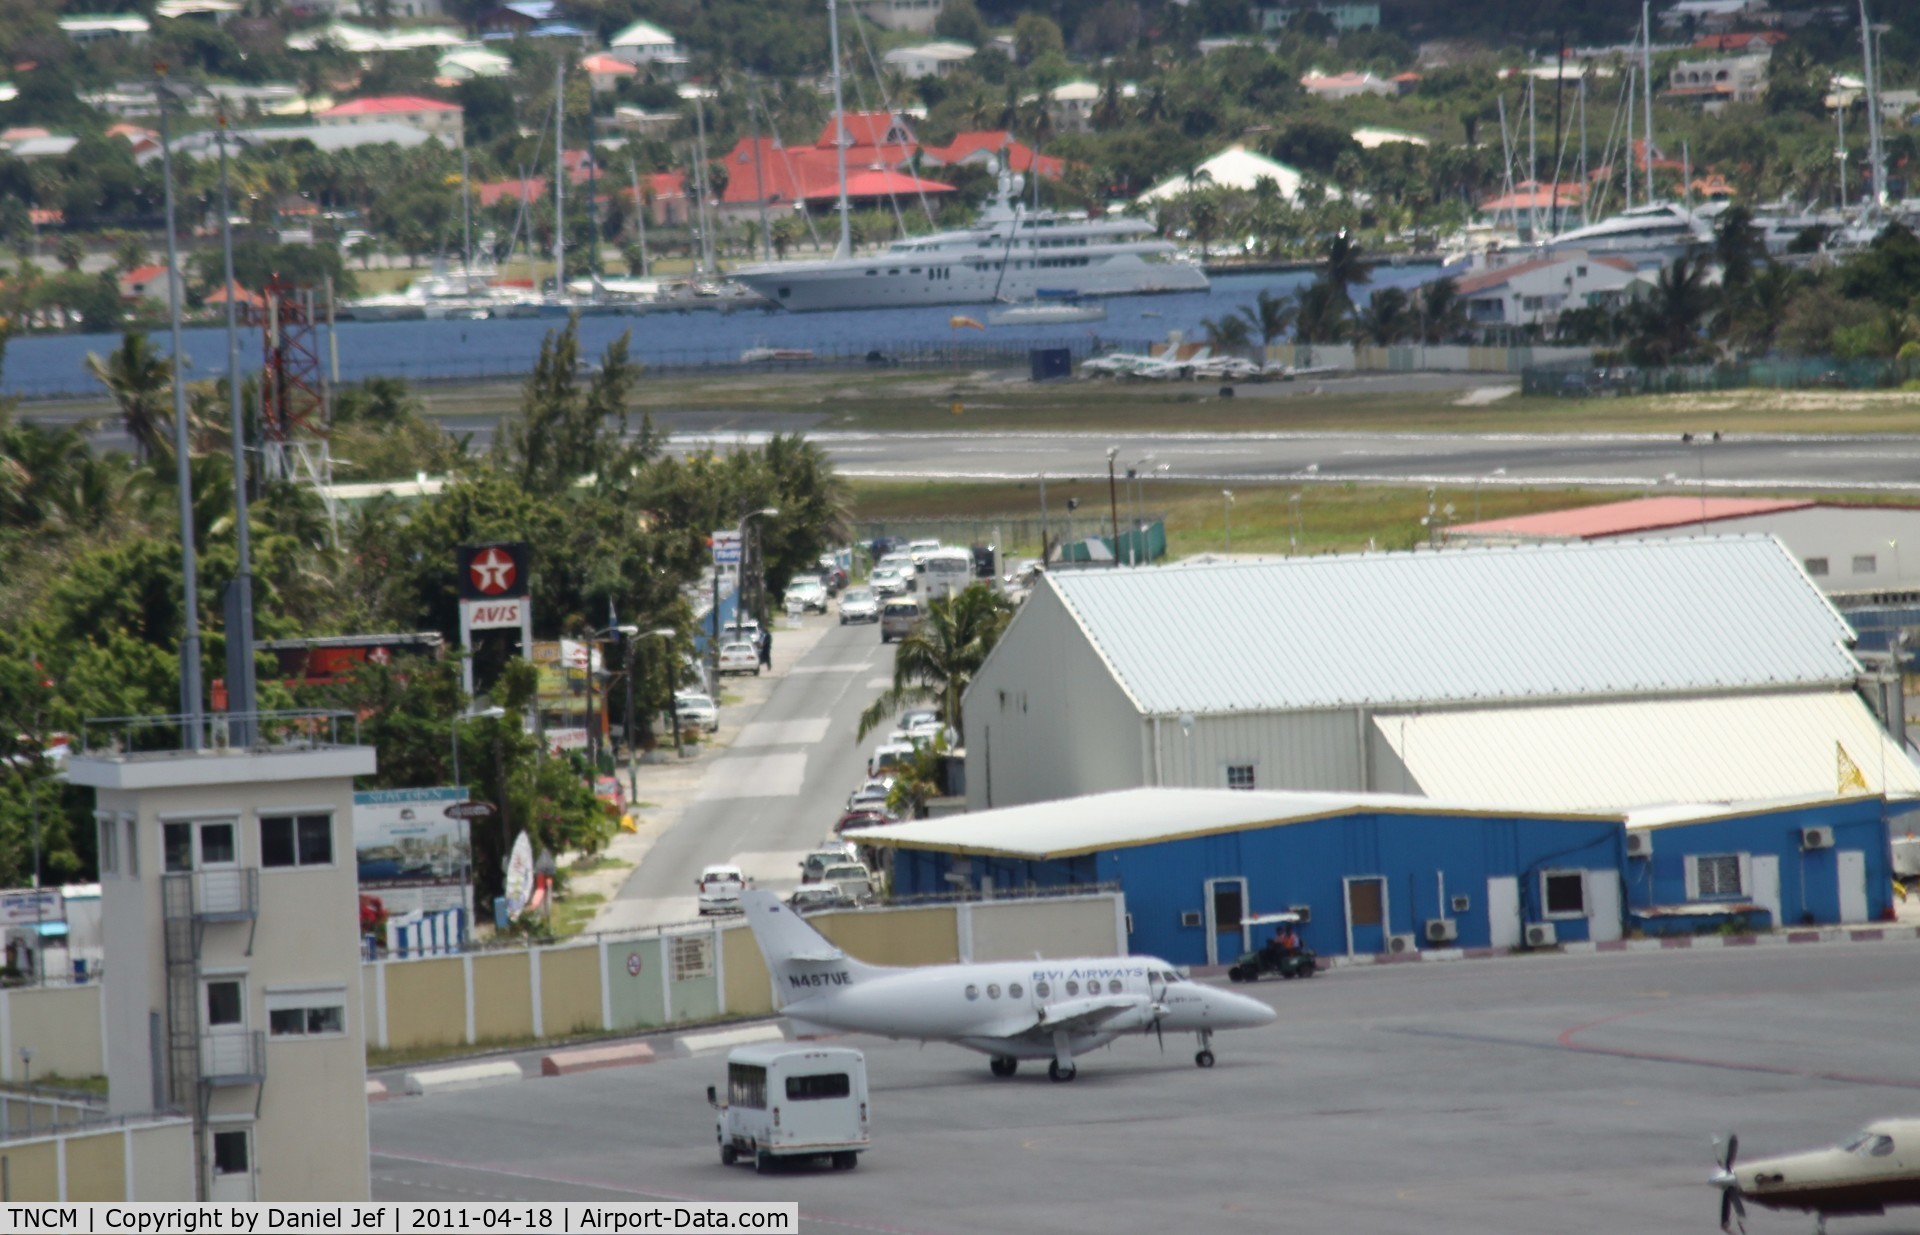 Princess Juliana International Airport, Philipsburg, Sint Maarten Netherlands Antilles (TNCM) - From the tower looking east